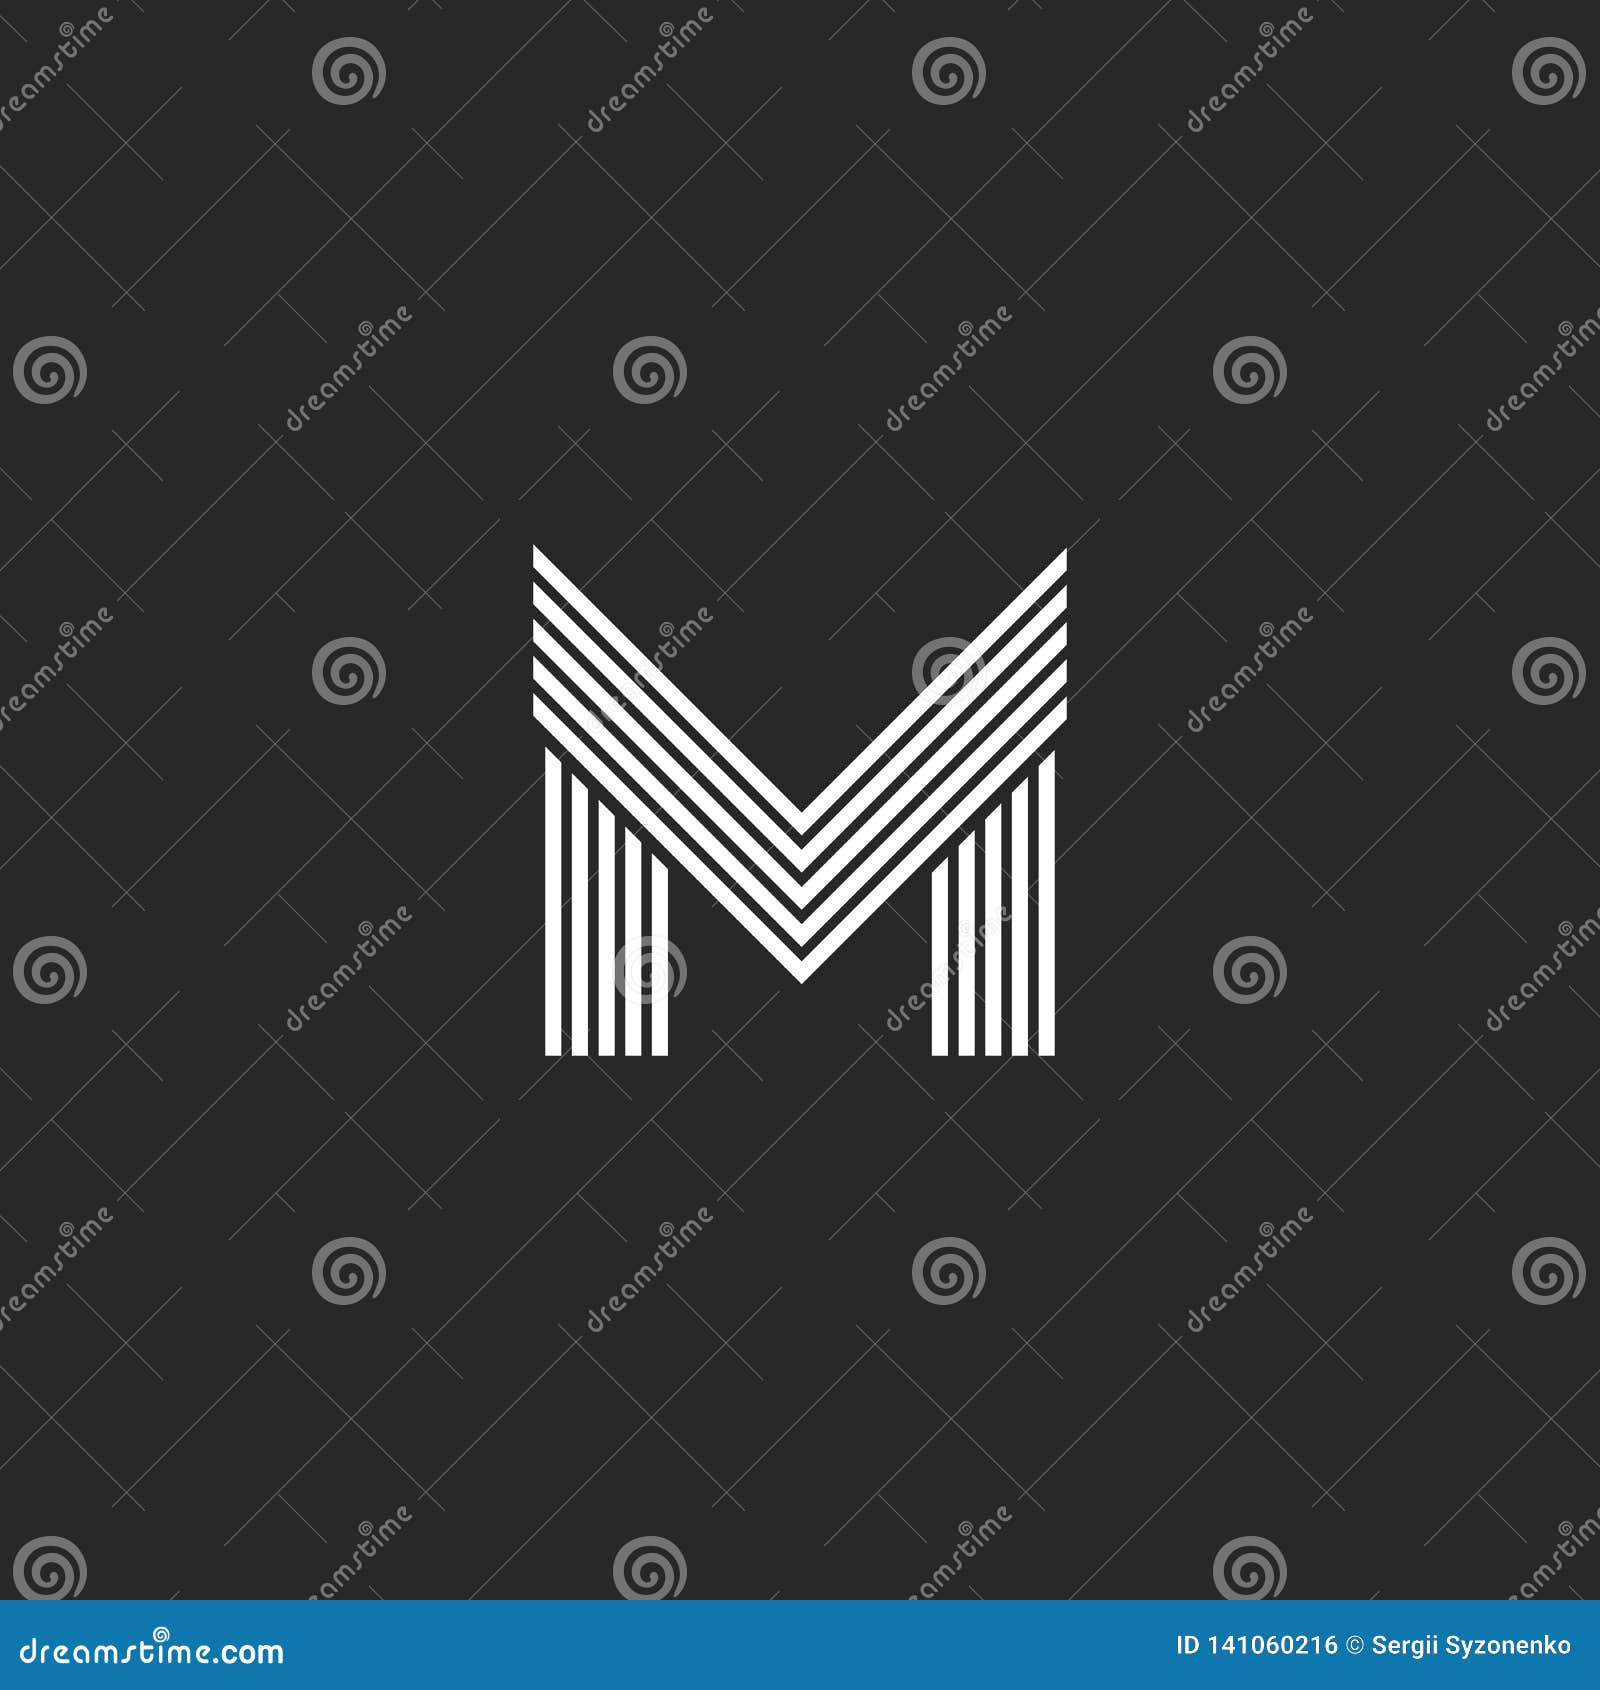 M Letter Logo Royal Stock Illustrations – 2,566 M Letter Logo Royal Stock  Illustrations, Vectors & Clipart - Dreamstime